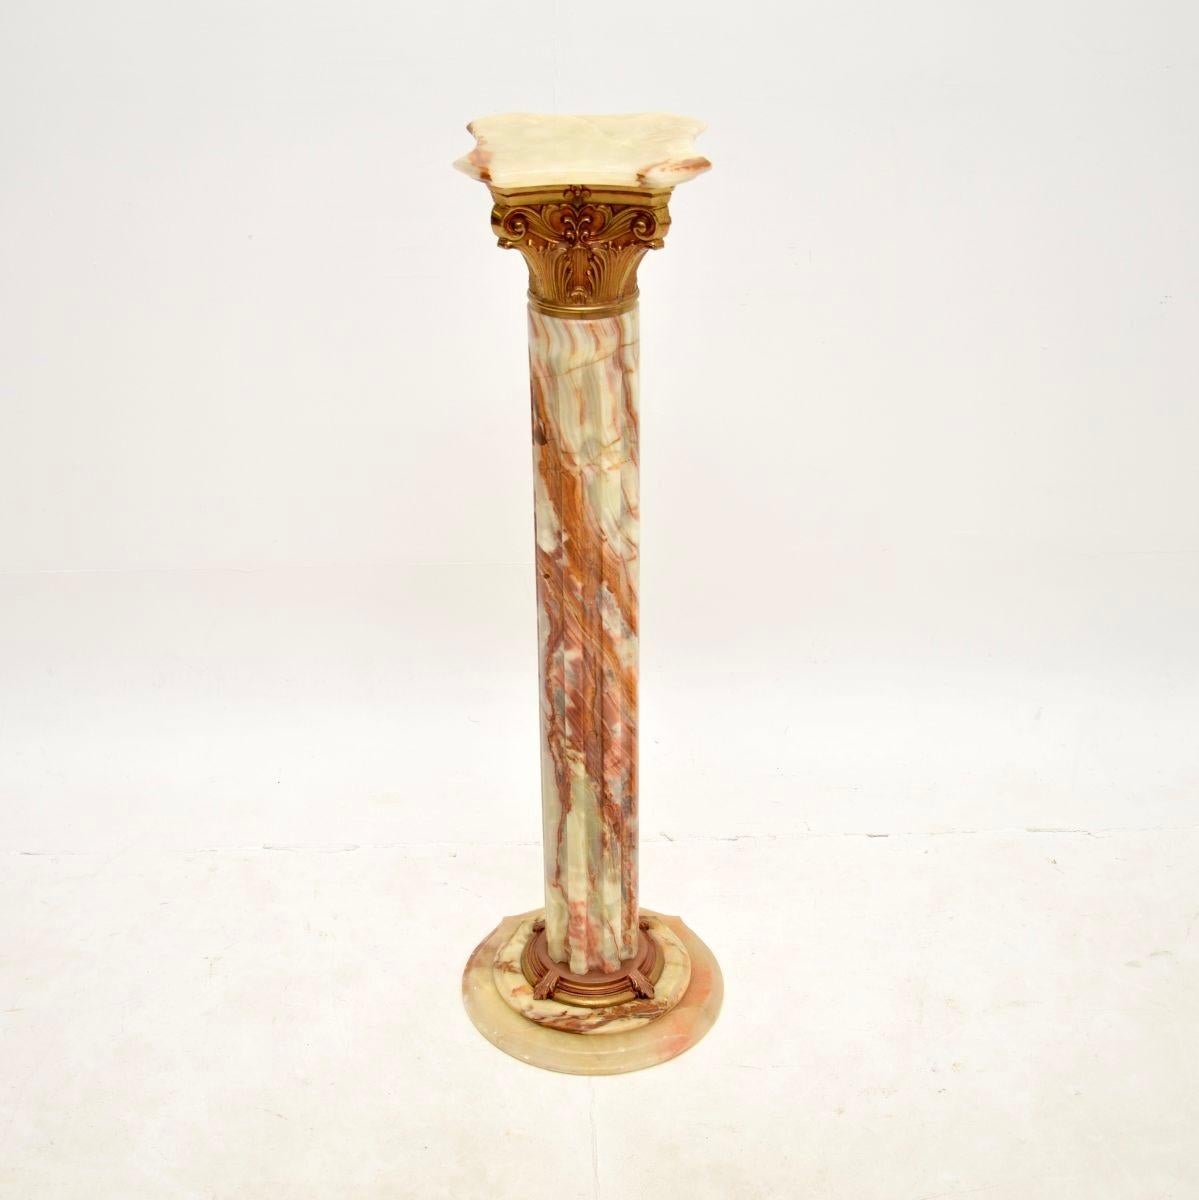 Eine atemberaubende antike korinthische Säule aus Onyx und vergoldetem Metall. Sie wurde höchstwahrscheinlich in Italien hergestellt und stammt aus den 1930er Jahren.

Er ist von hervorragender Qualität, das Design einer neoklassischen korinthischen